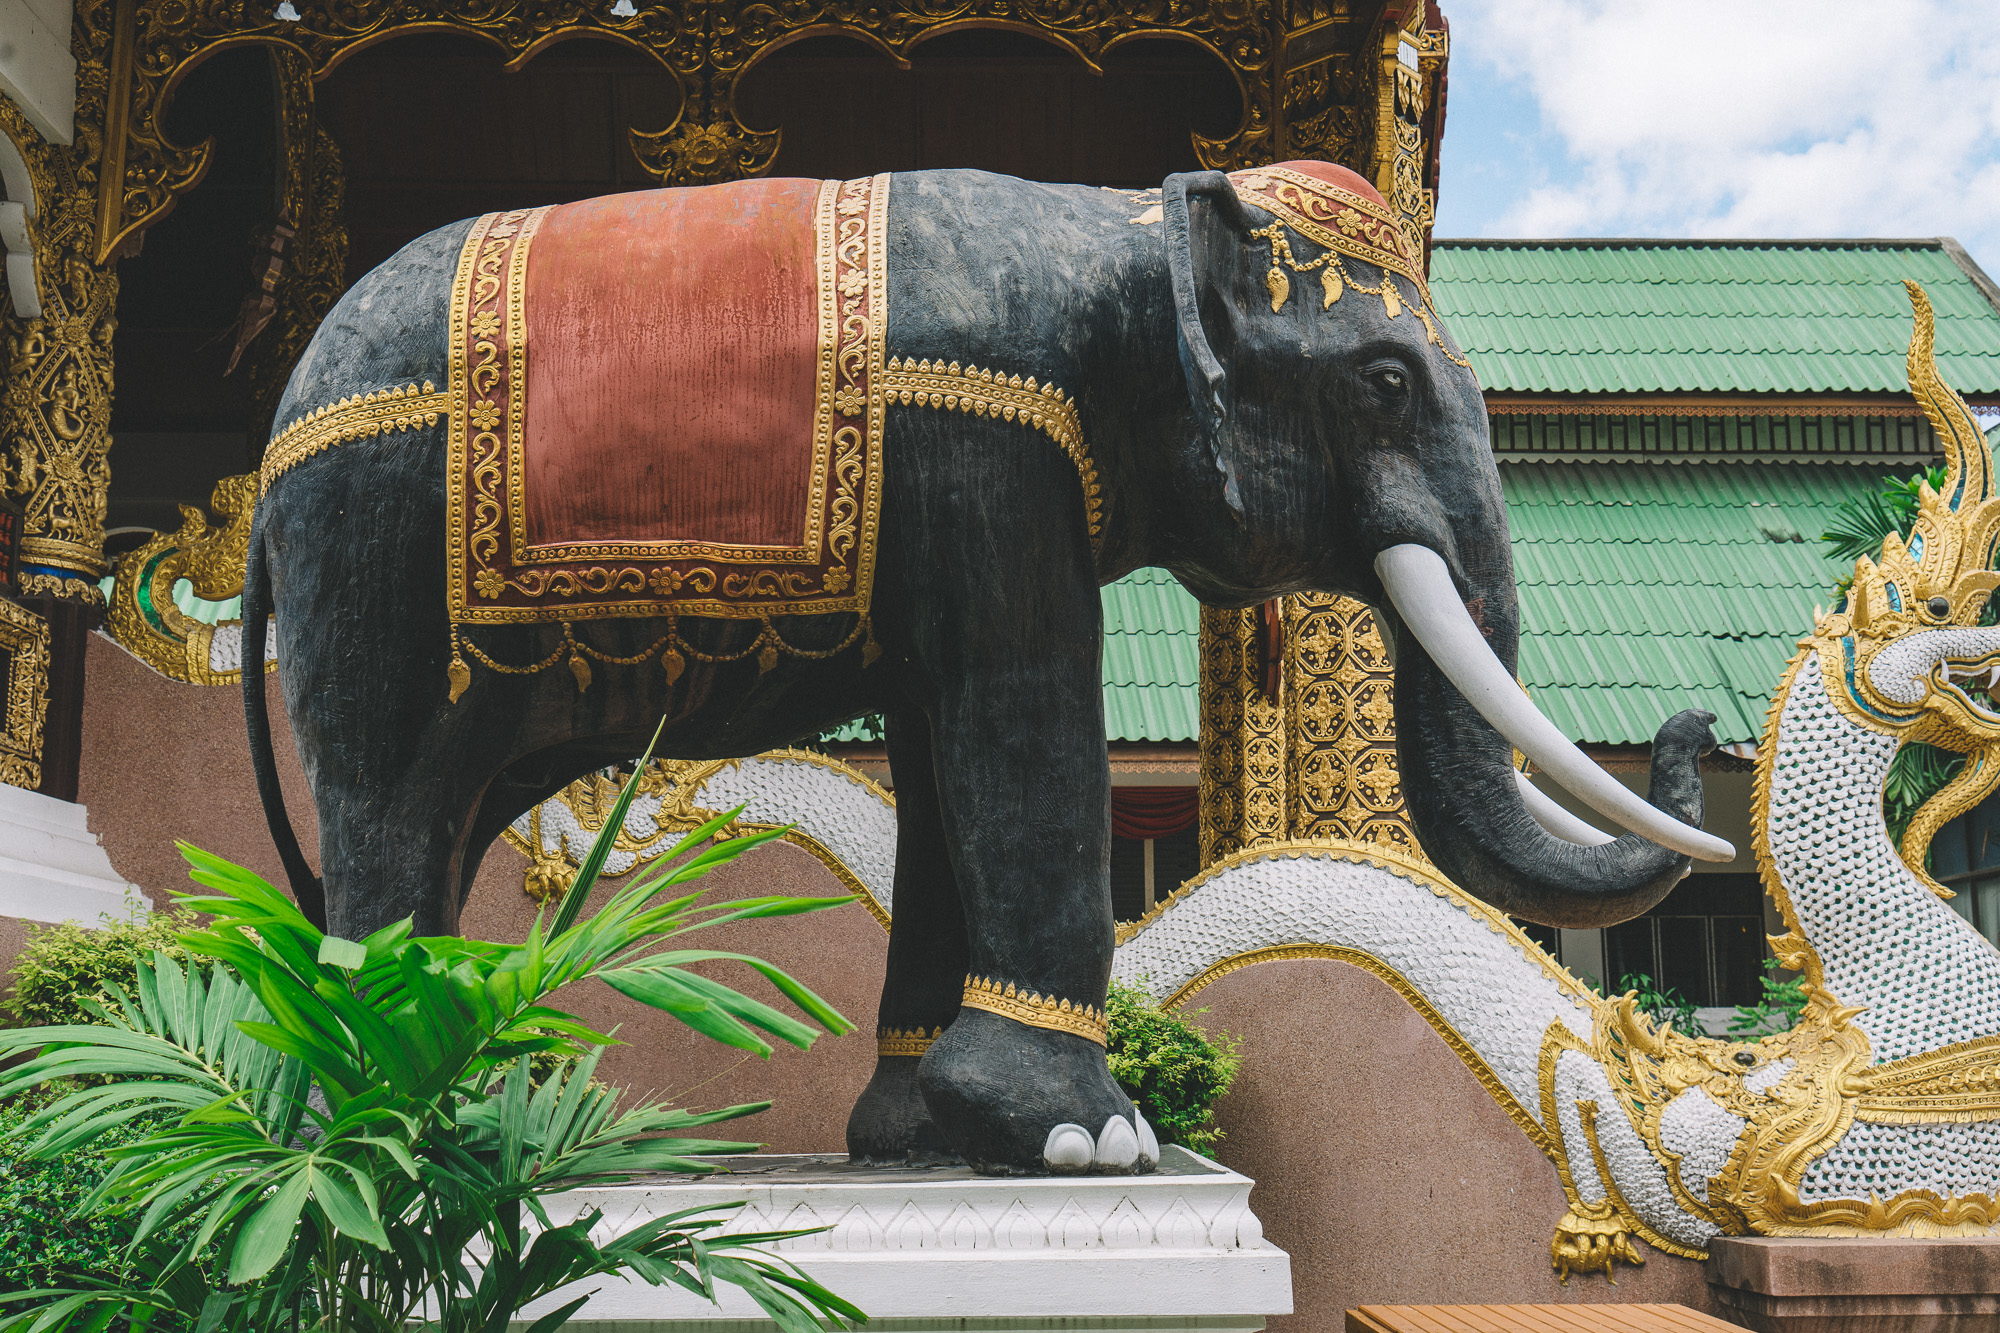 Wat Saen Muang Ma Luang (Wat Hua Khuang)